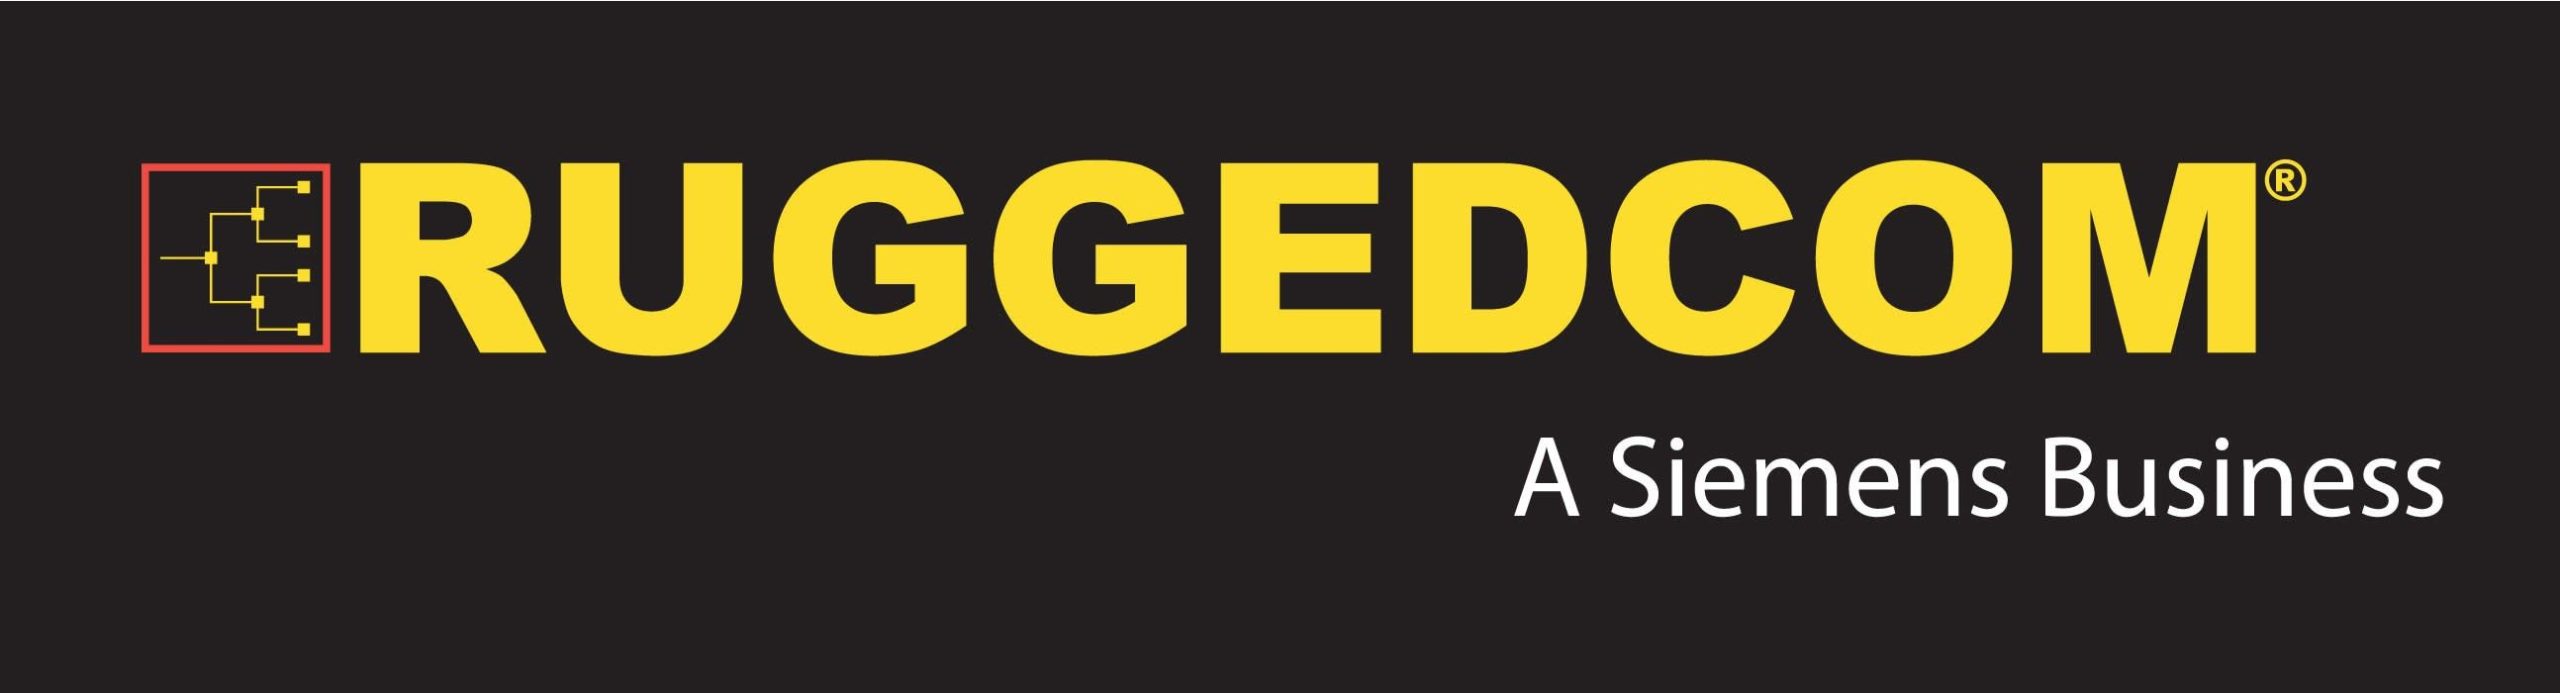 Ruggedcom-logo_1662510030